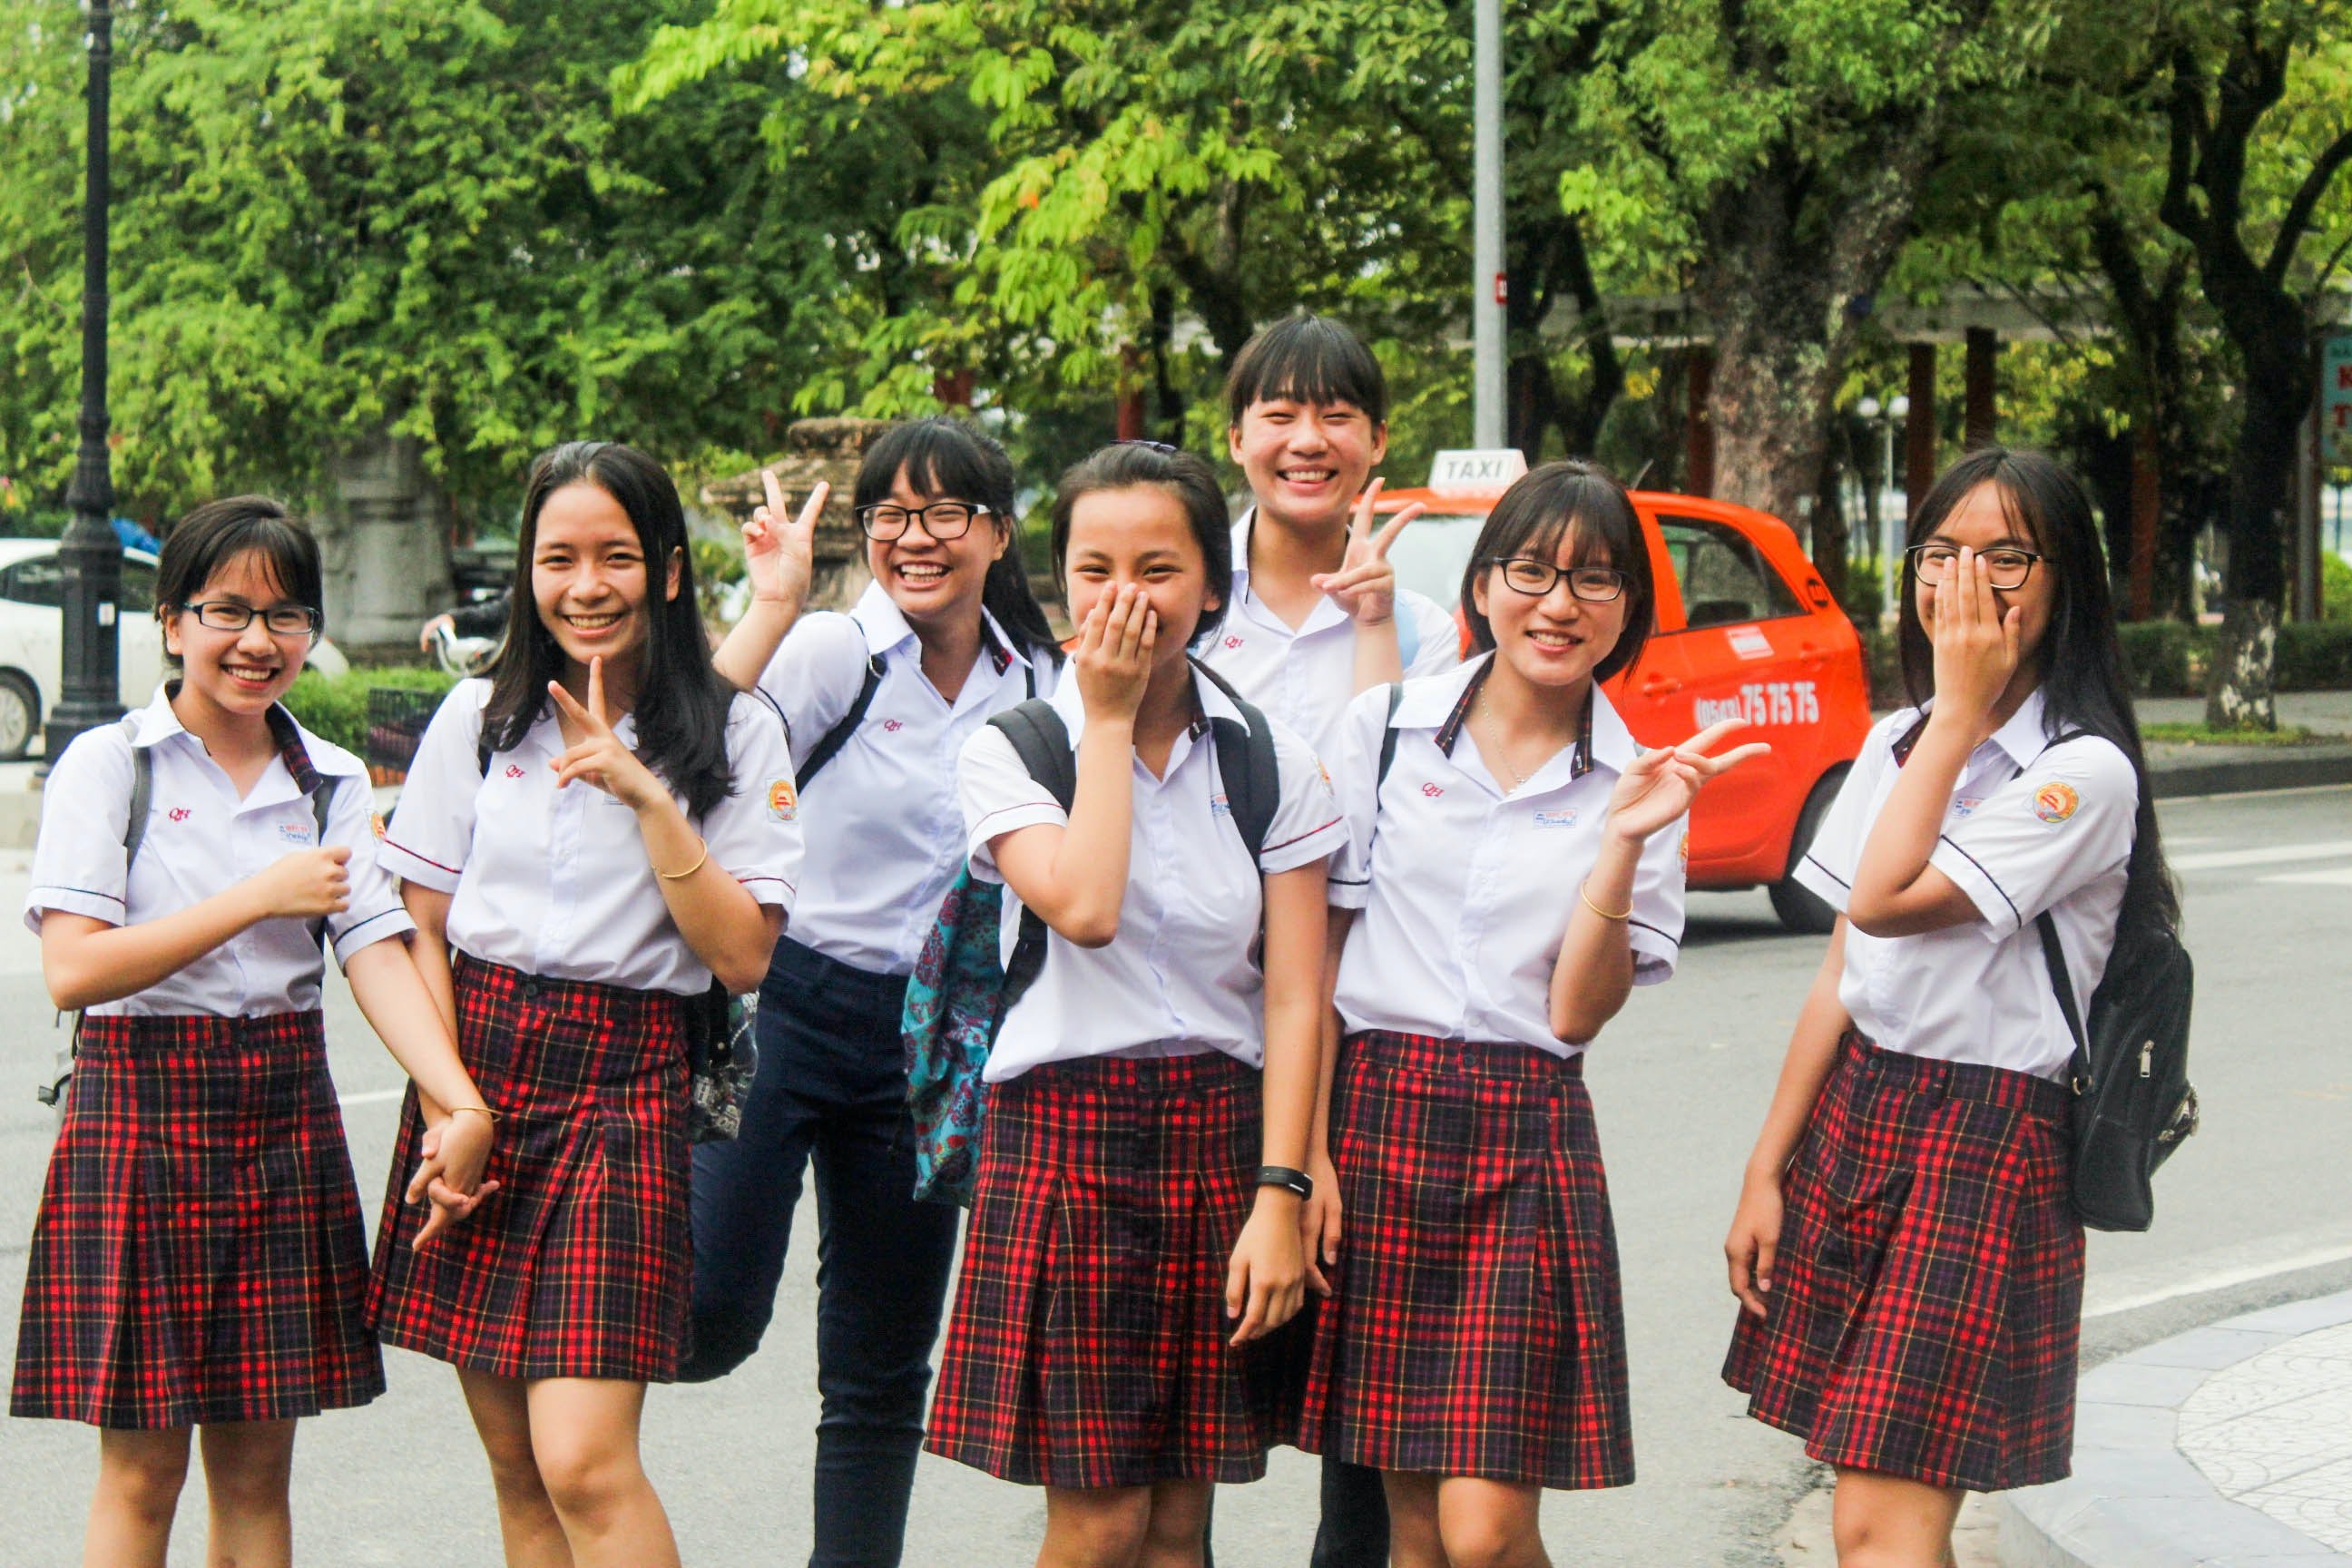 Students in school uniforms. | Photo: Pexels